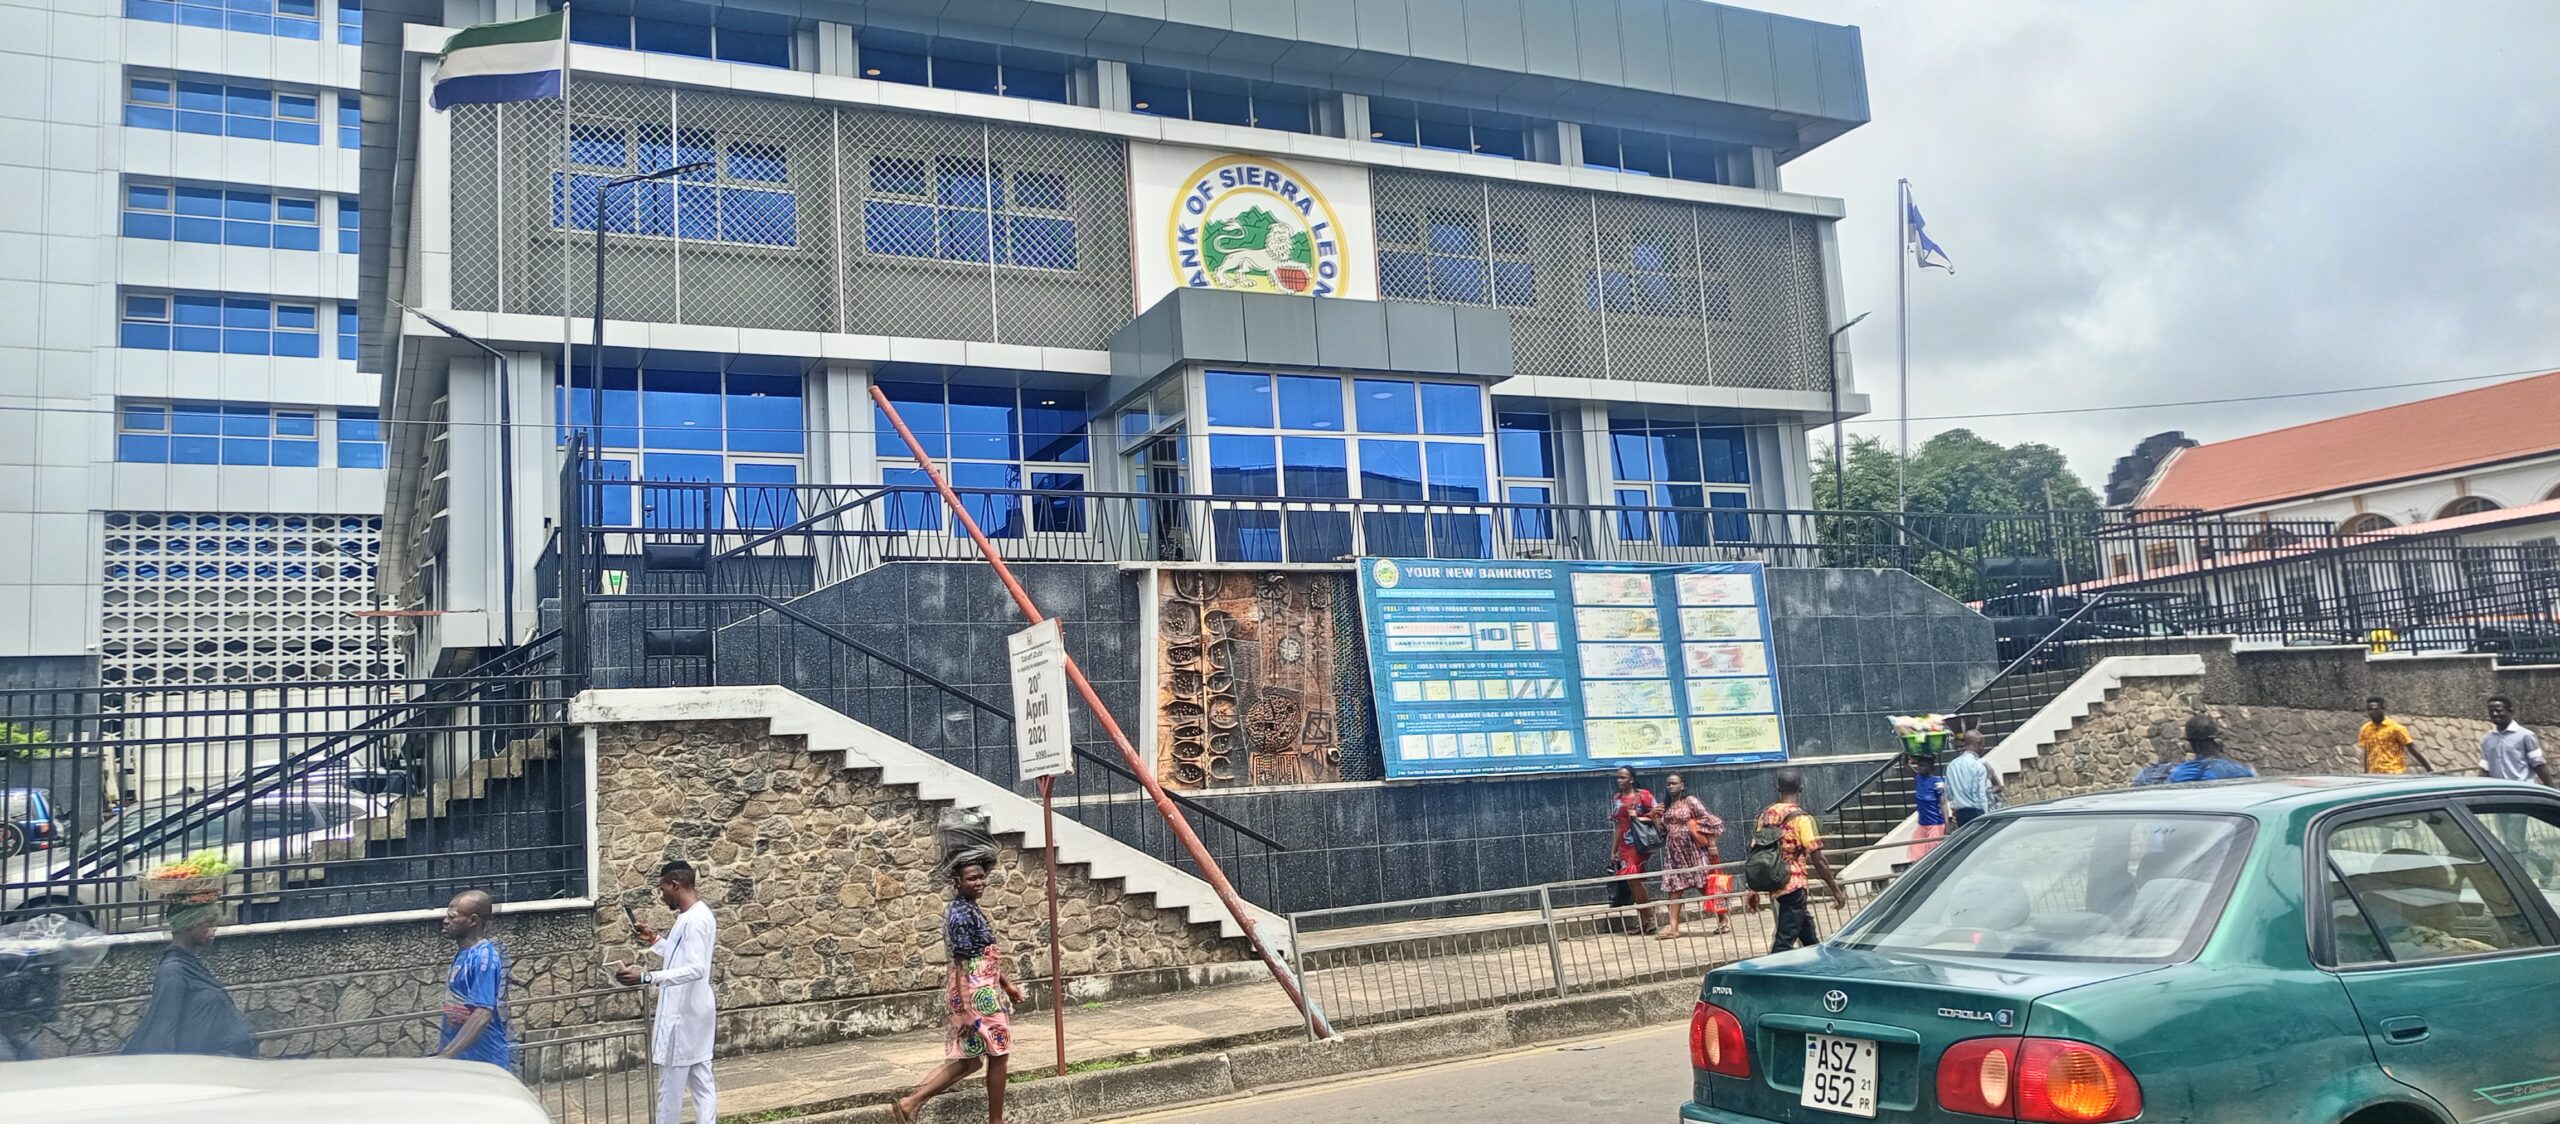 Bank of Sierra Leone